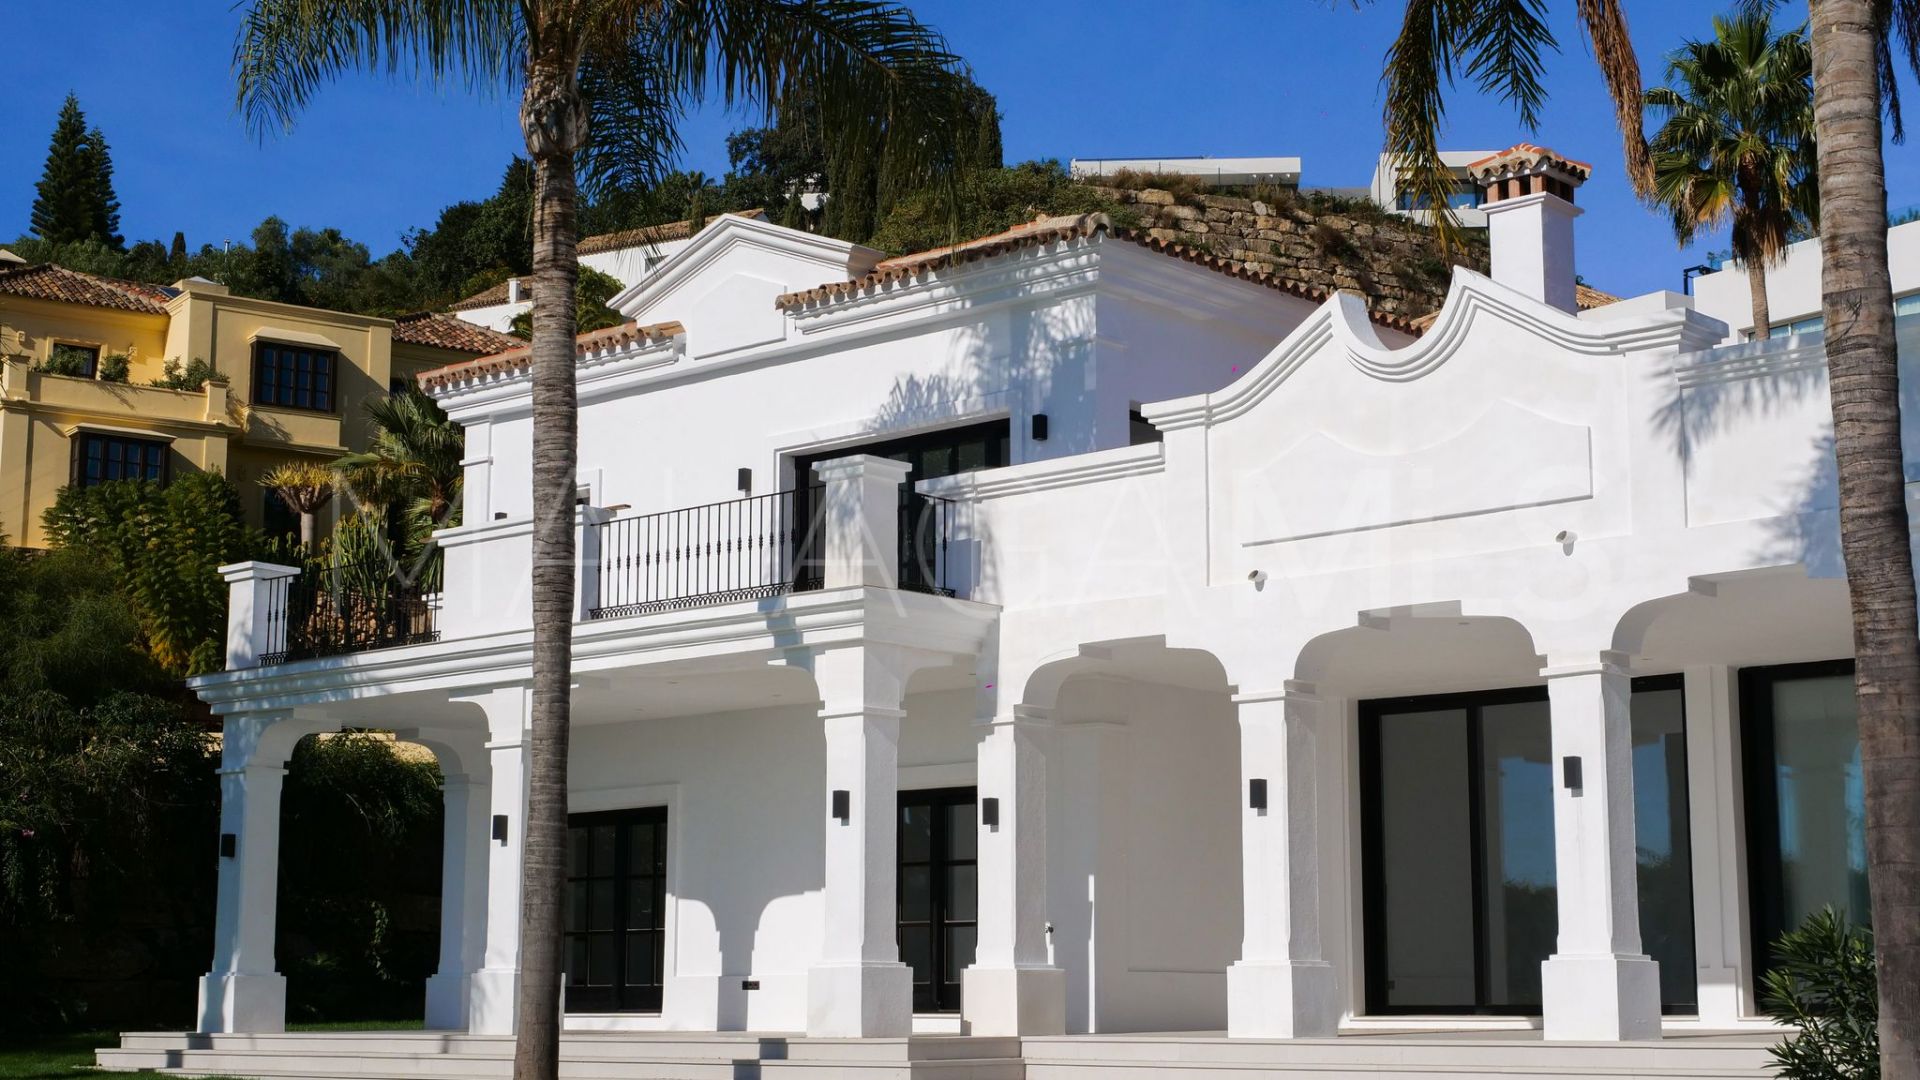 Se vende villa de 6 bedrooms in El Paraiso